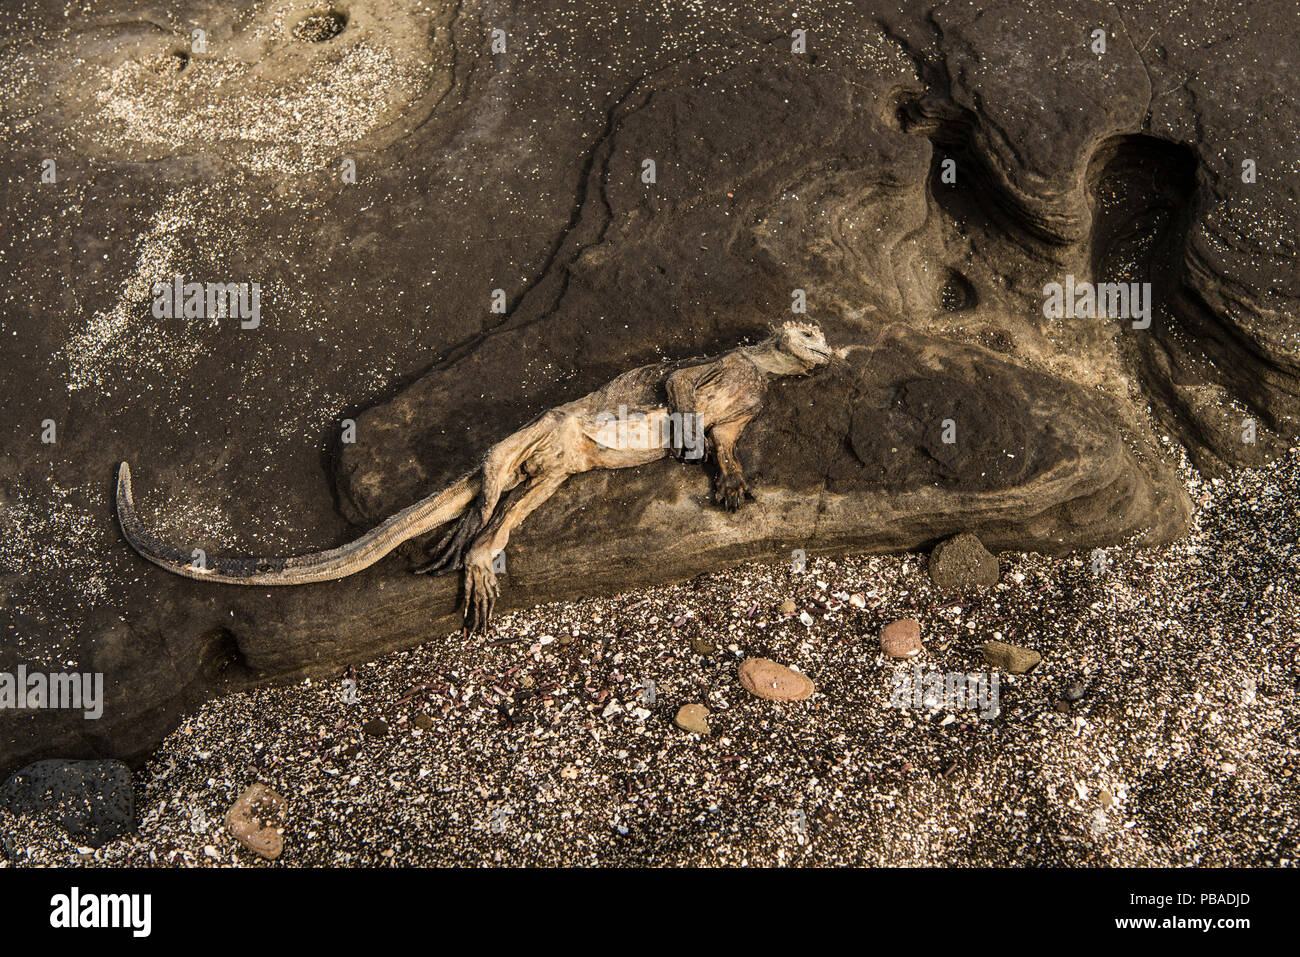 Marini morti (iguana Amblyrhynchus cristatus) sulle rocce costiere sull'isola di Santiago, Galapagagos, aprile 2016. Probabilmente è morto di fame come gran parte delle alghe nella regione sono morti spento a causa insolitamente caldo El Nino acque. Foto Stock